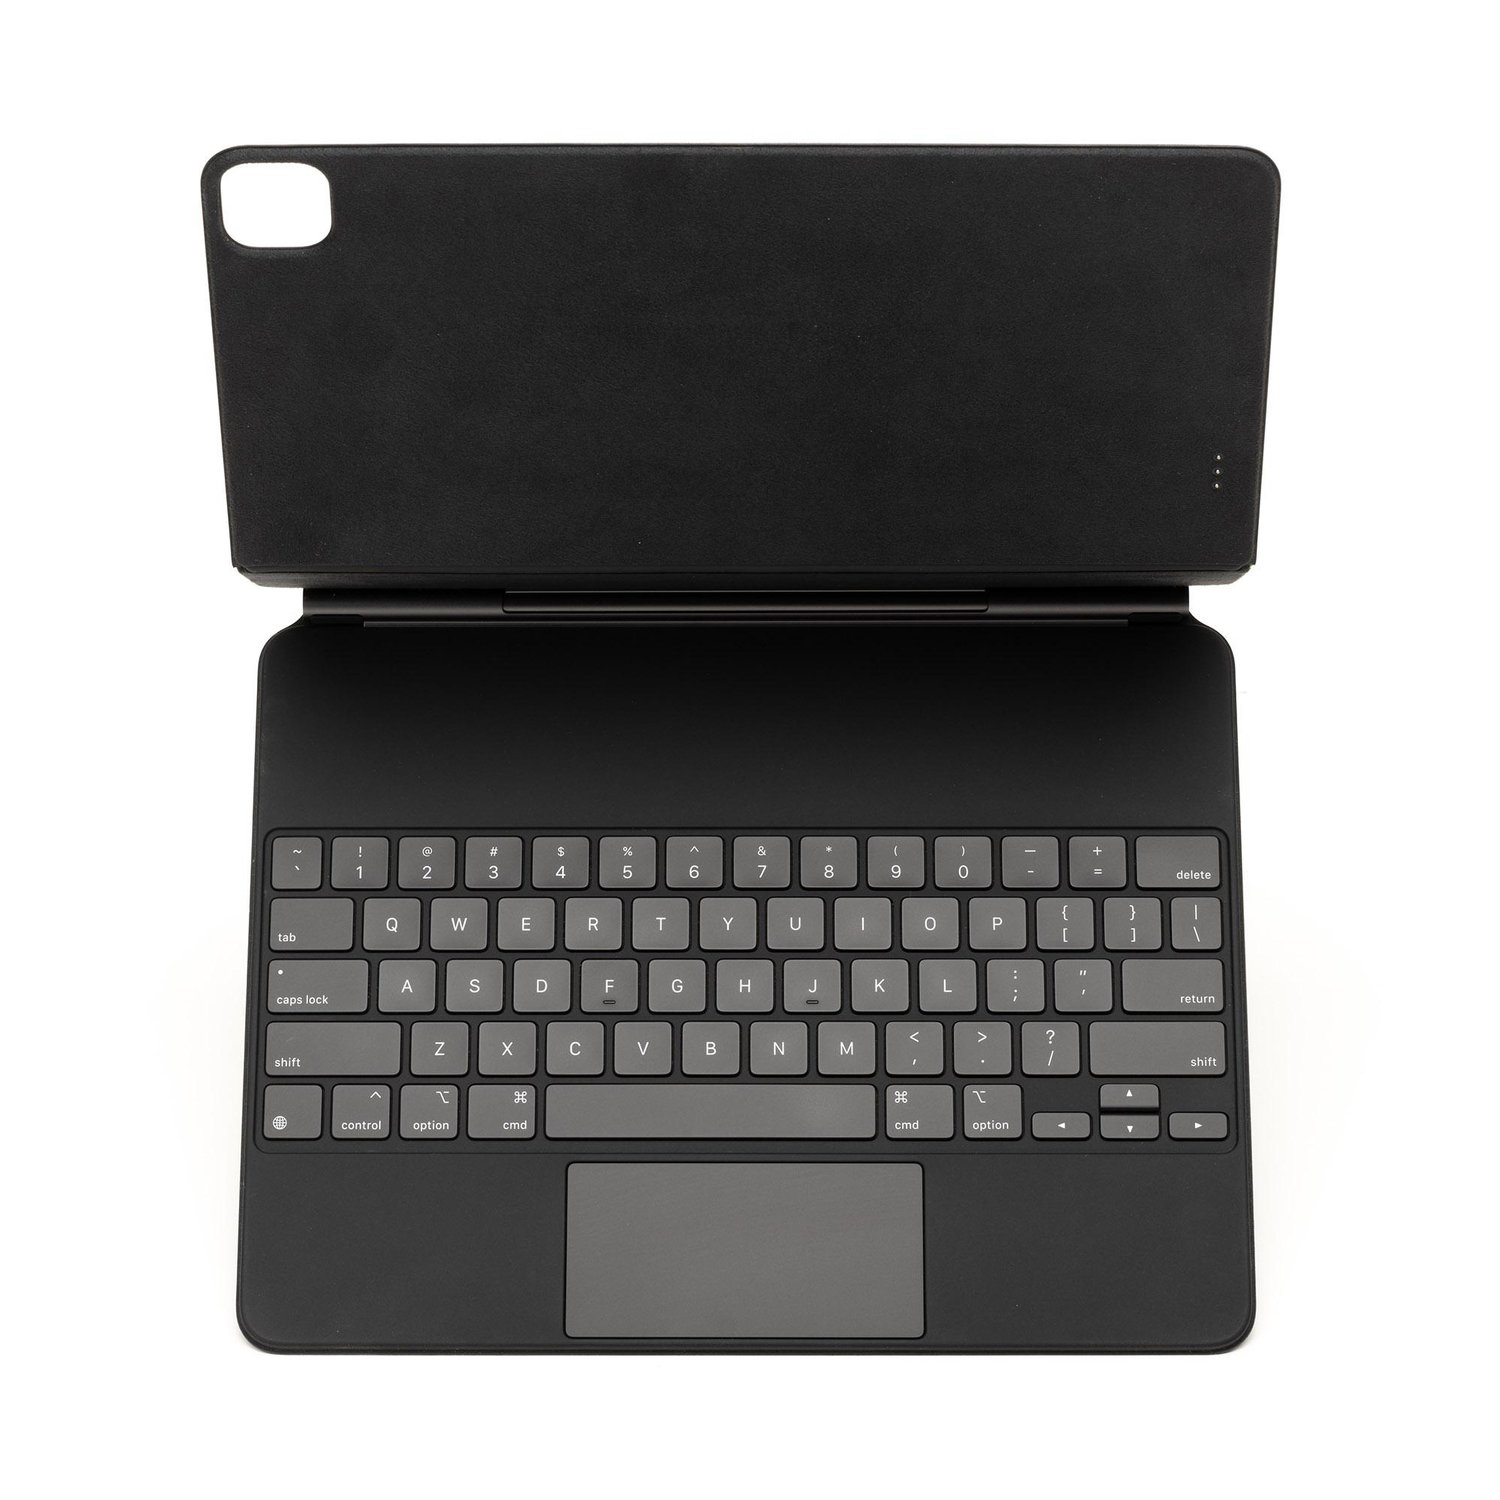 Apple MXQU2LL/A Magic Keyboard with Trackpad at MacSales.com